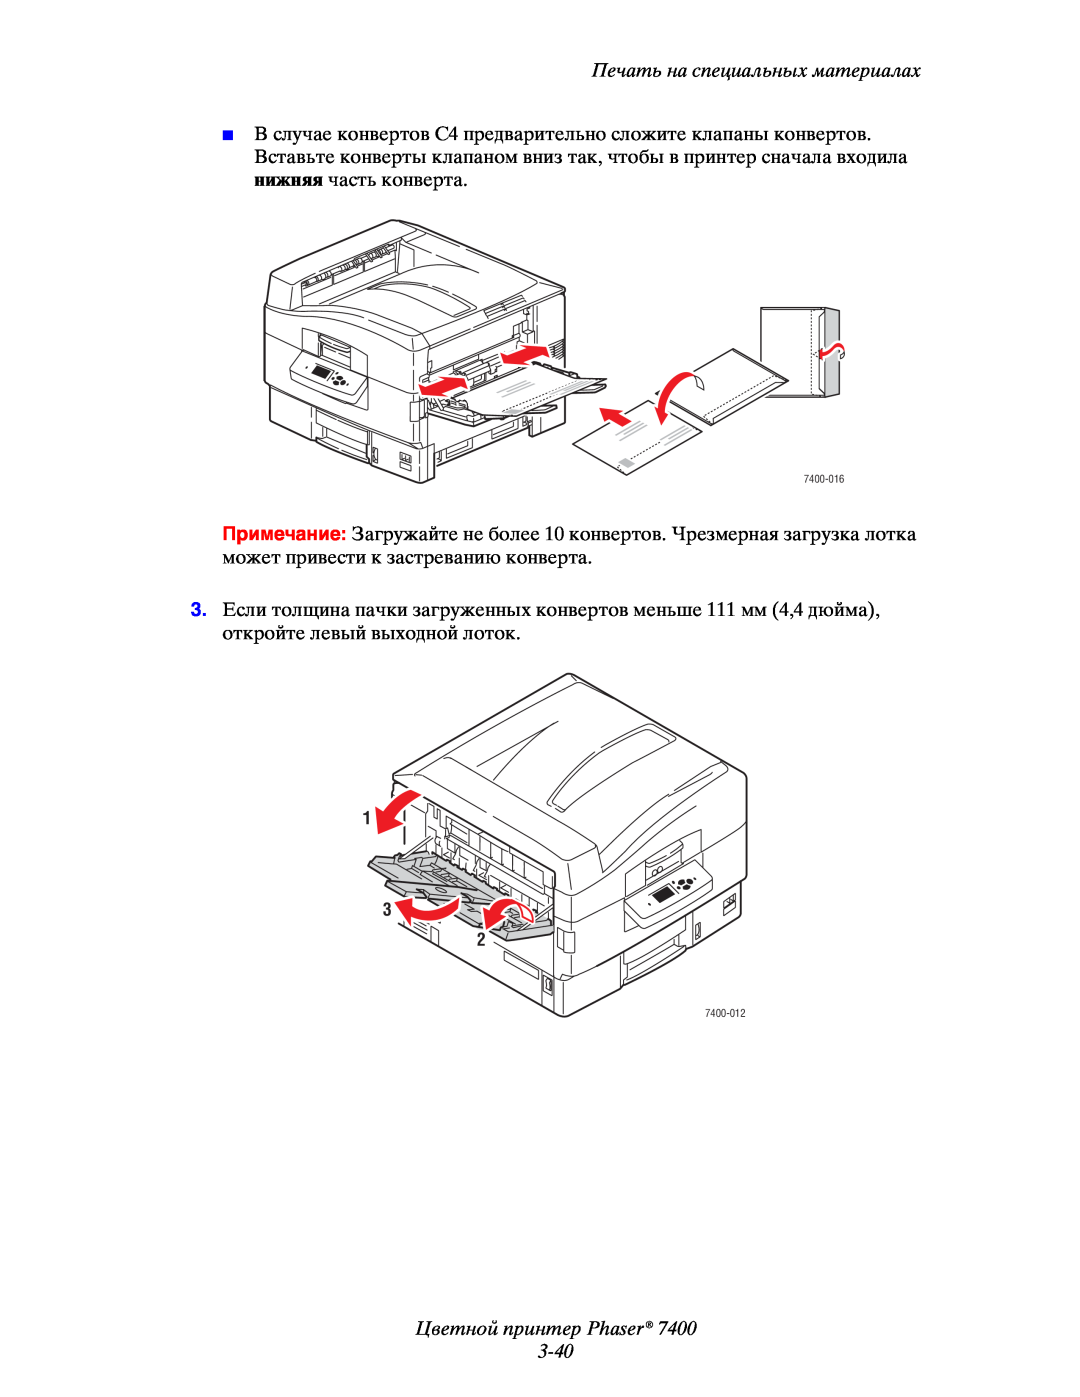 Xerox 7400 manual Цветной принтер Phaser 3-40, Печать на специальных материалах 